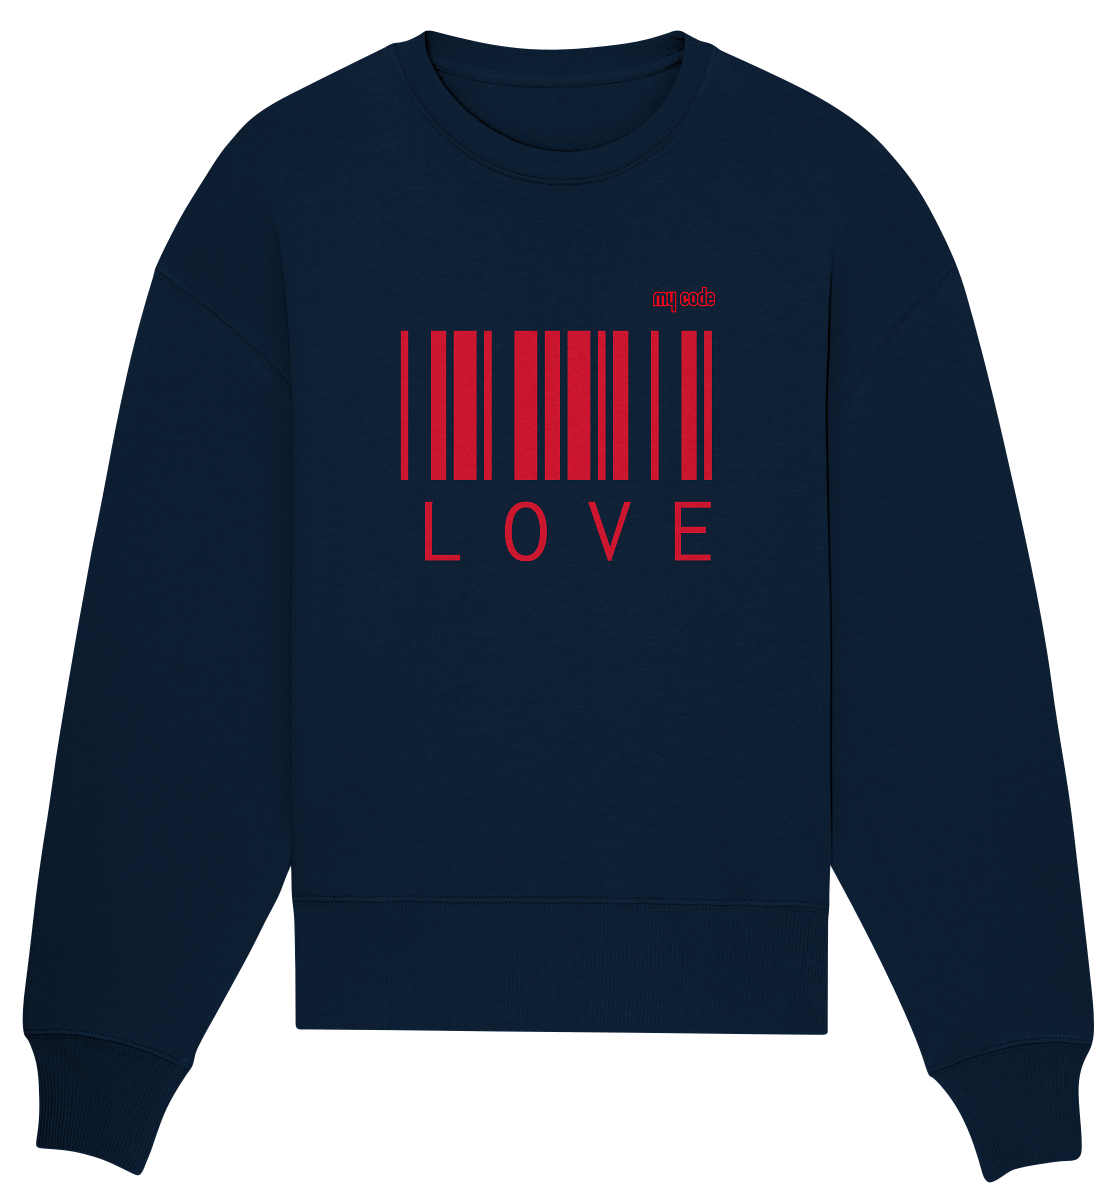 My code Love Statement Oversize Pullover in navy blau mit roten code